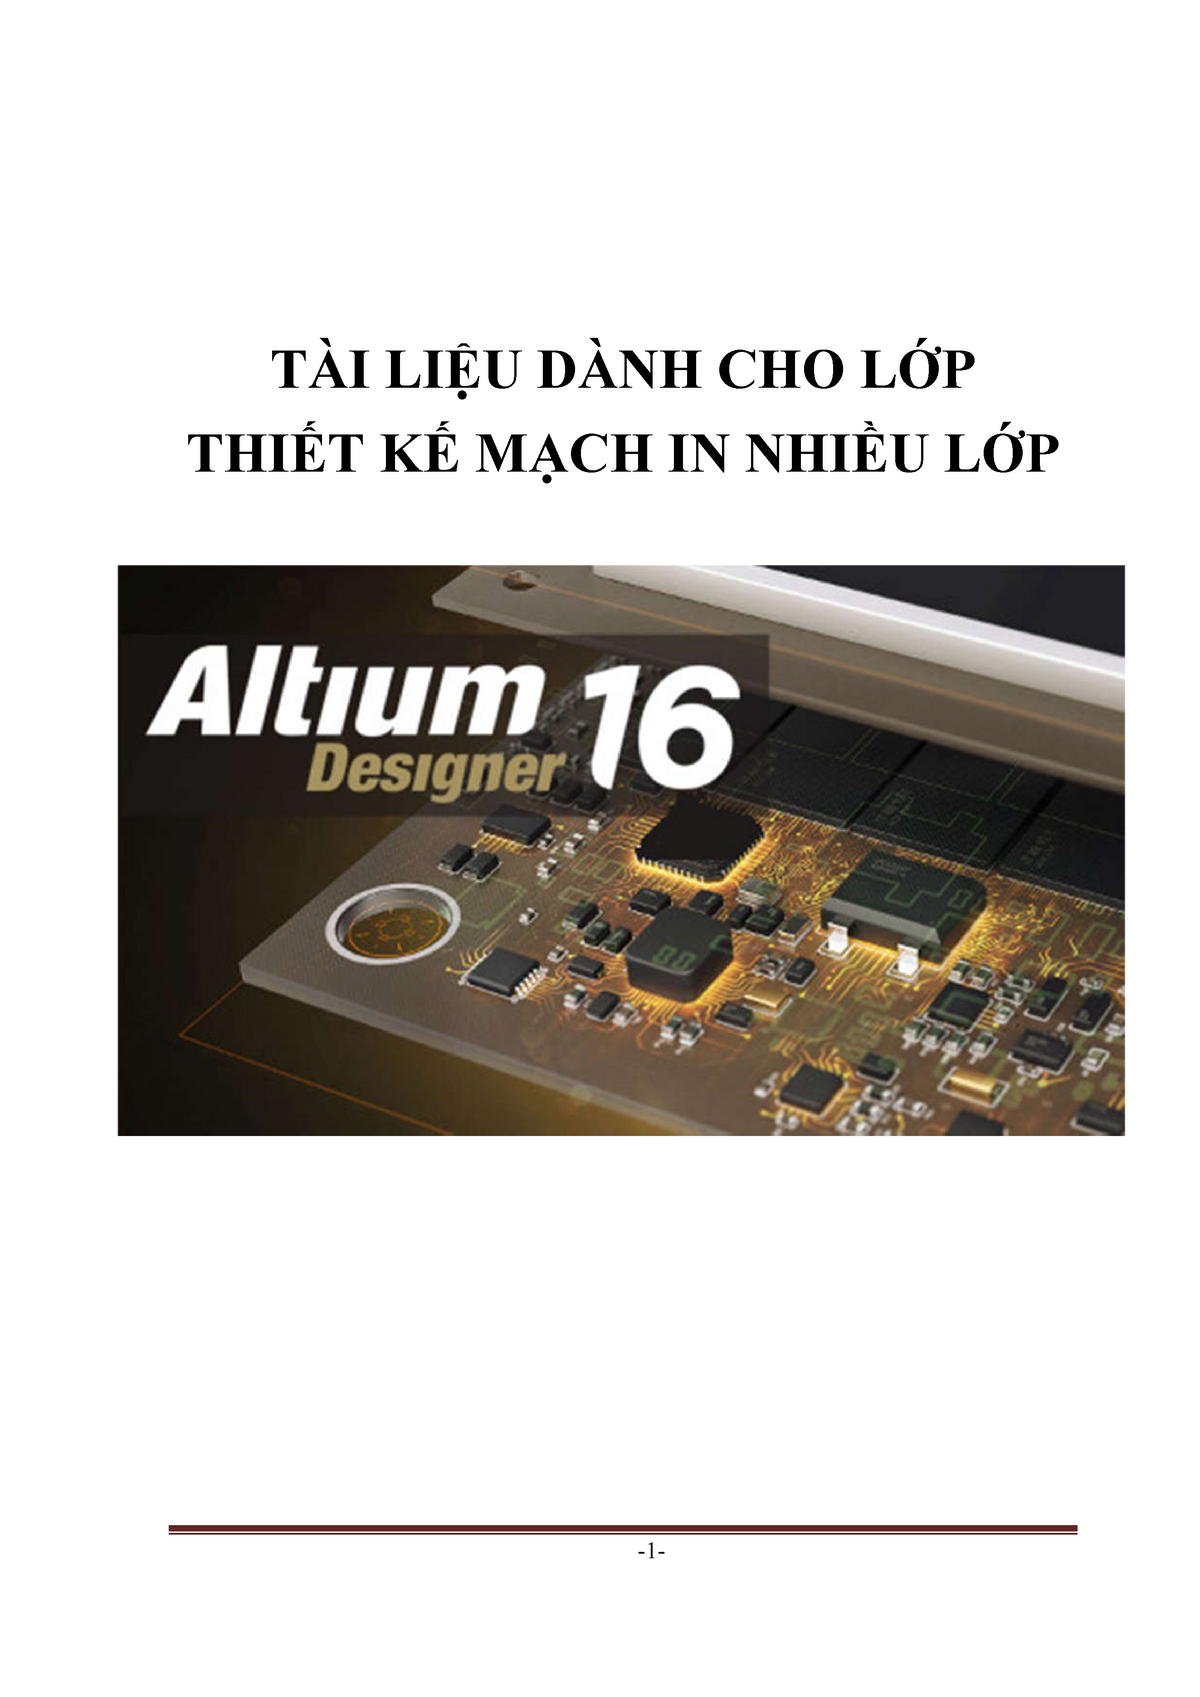 altium designer 16 book